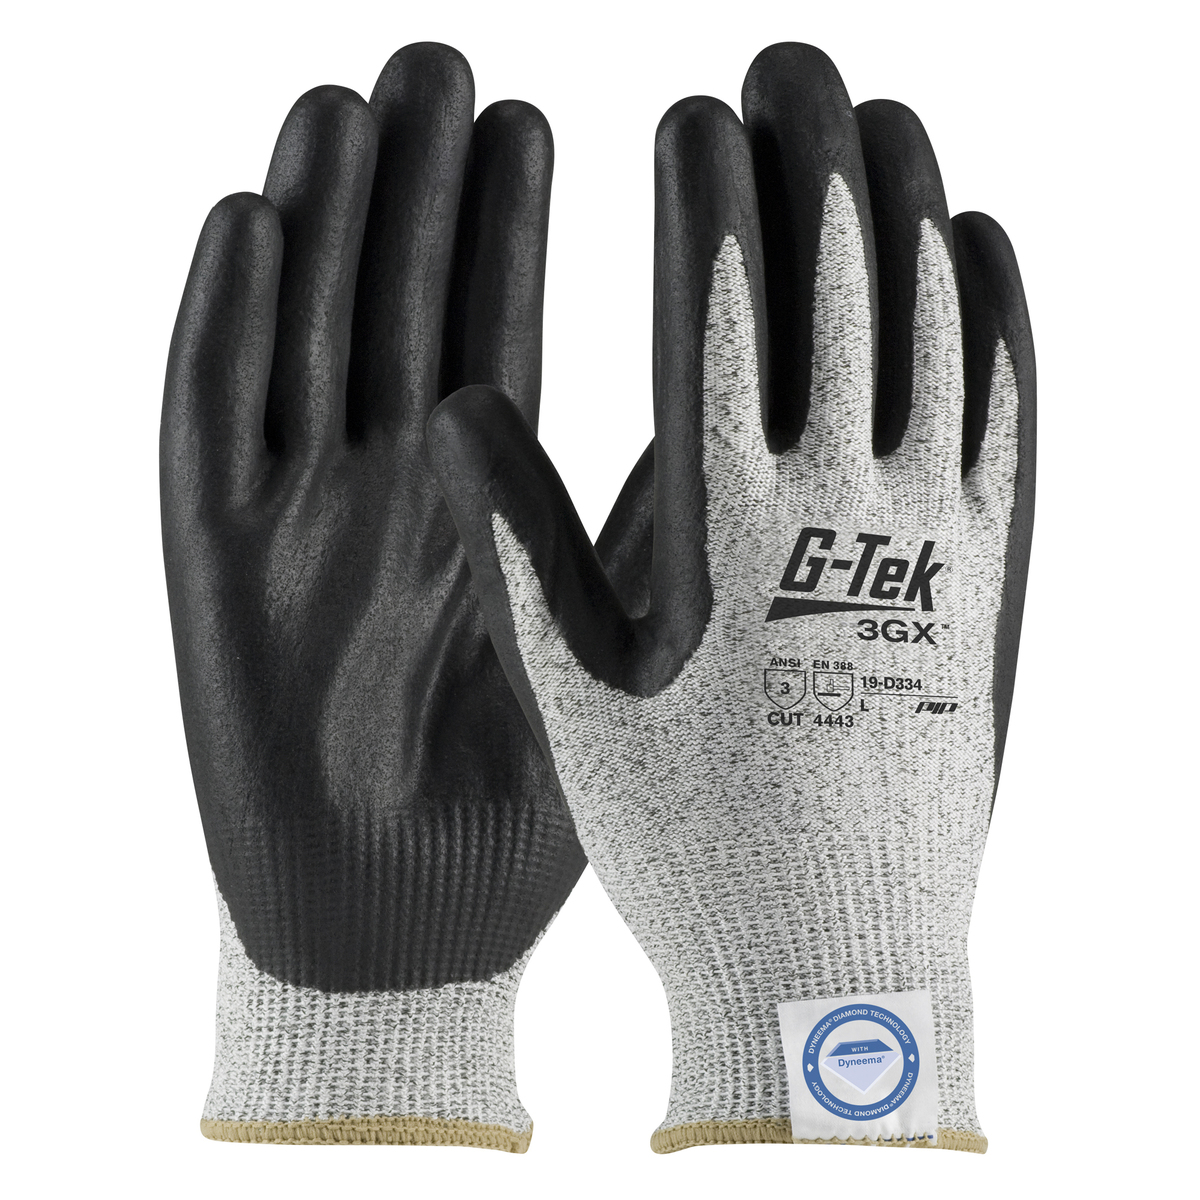 PIP® Large G-Tek® 3GX® 13 Gauge Dyneema® Diamond Blend Cut Resistant Gloves With Nitrile Coating